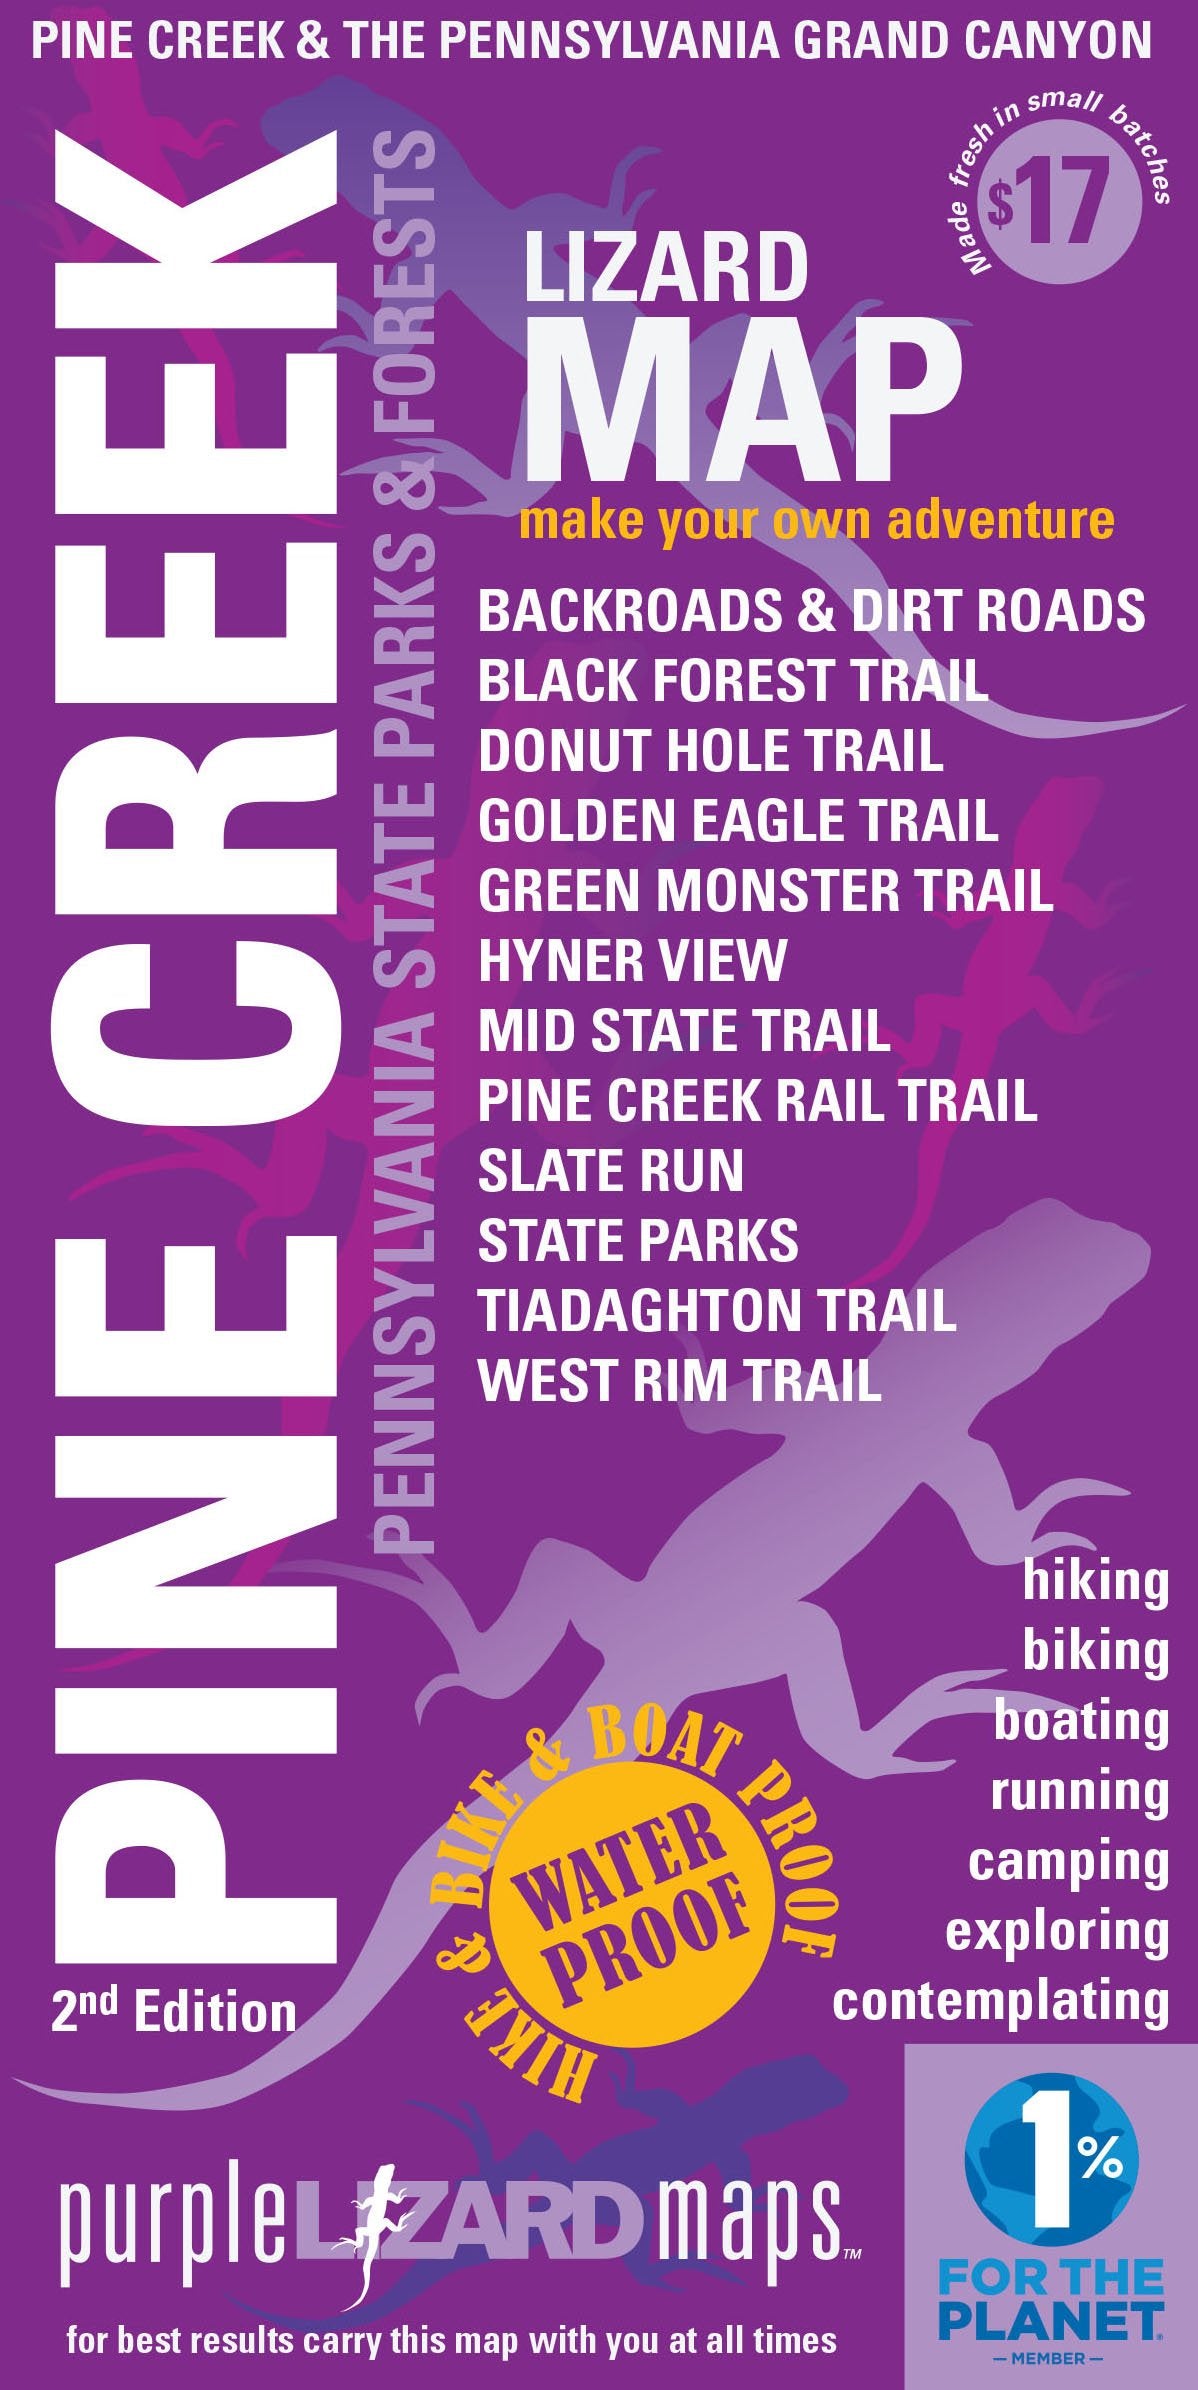 Purple Lizard Pine Creek Lizard Map